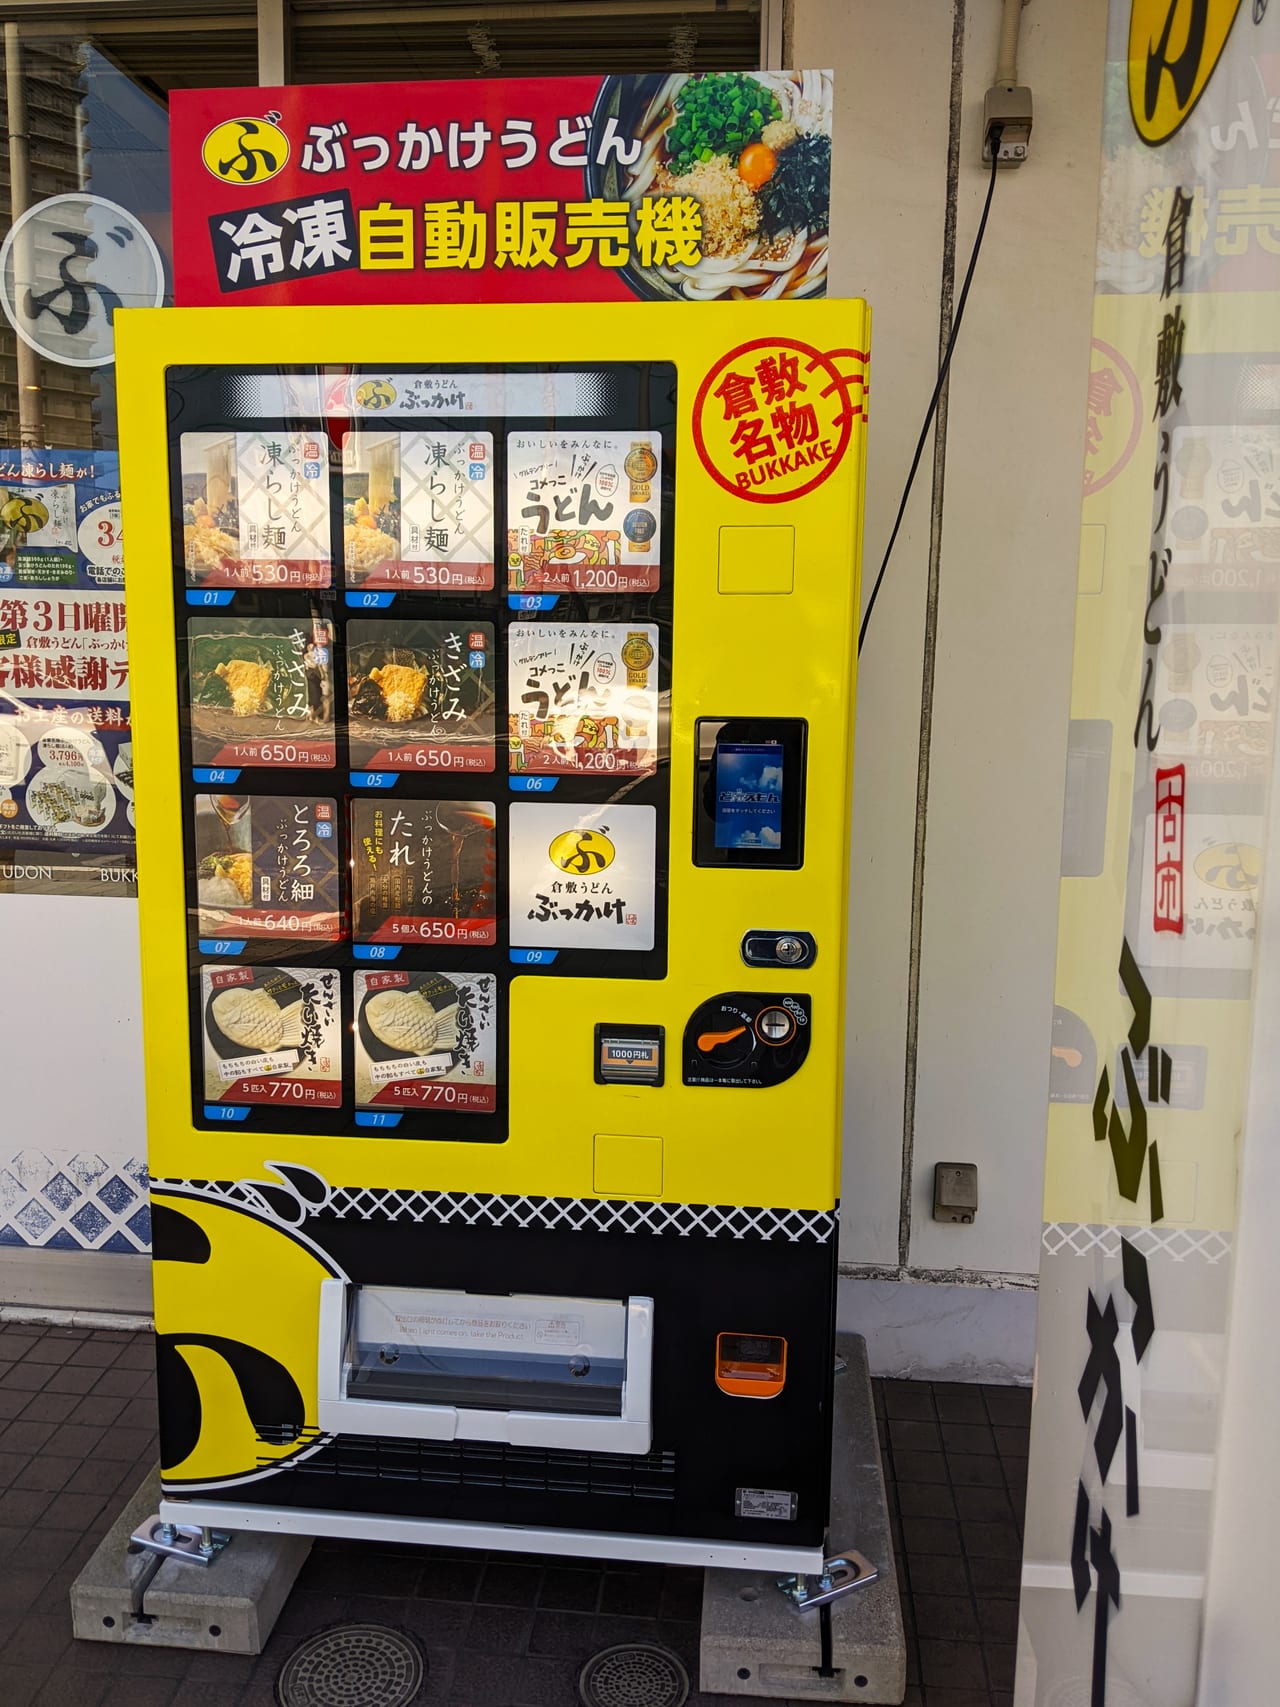 「ぶっかけふるいち岡山健幸プラザ店」の冷凍自販機